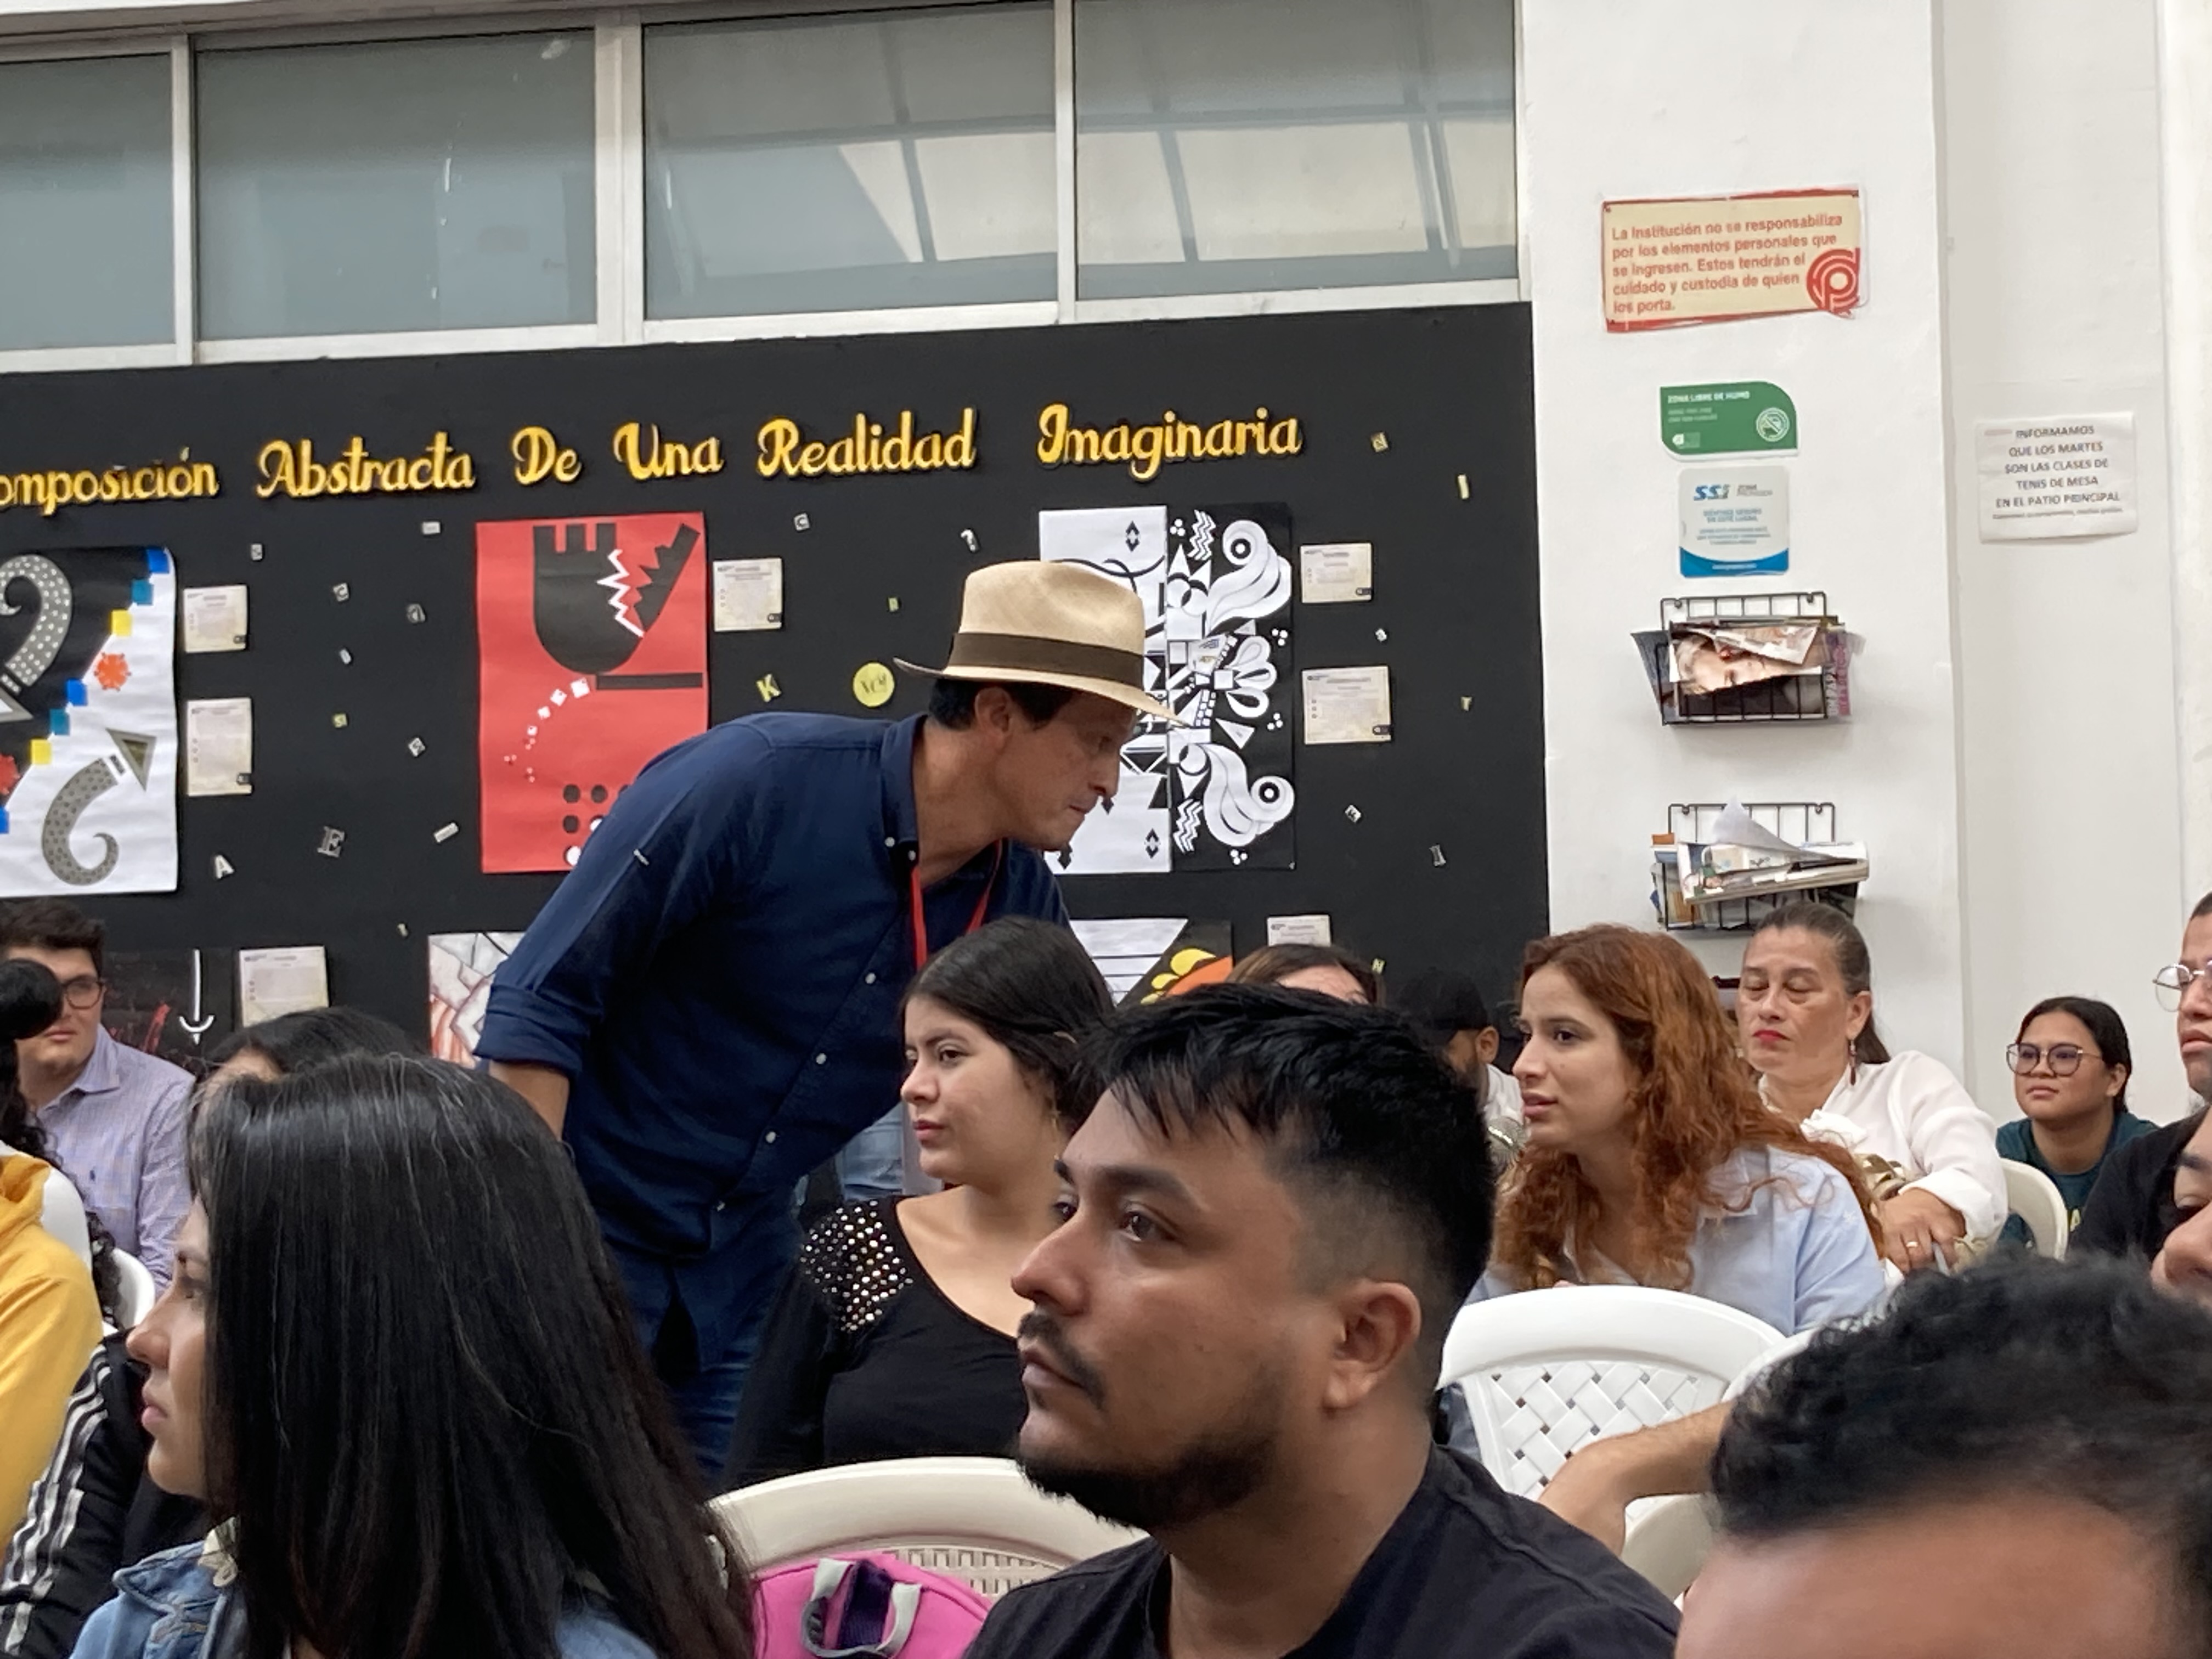 Profesor Jaime Cortés interactuando con los asistentes al evento